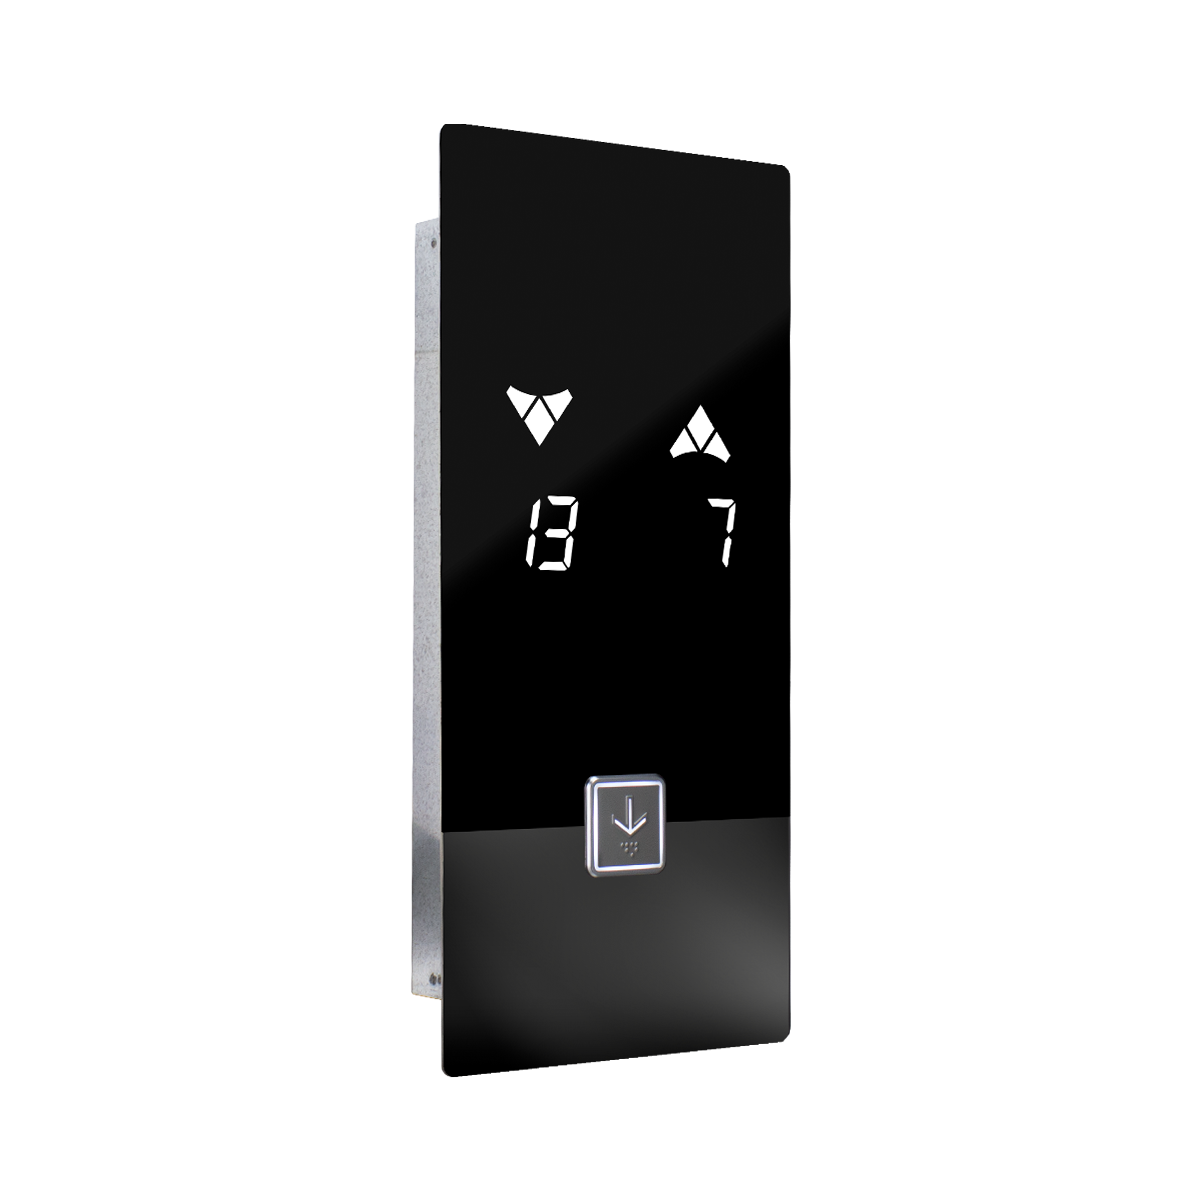 نل شستی دو متری روکار داخل کابین آسانسور با محدود کننده اثر انگشتی و نمایشگر تاچ 7 اینچی رنگی و نشانگر 9 اینچ رنگی - سری CATRINA TFT TOUCH - شرکت نوین کیا تک